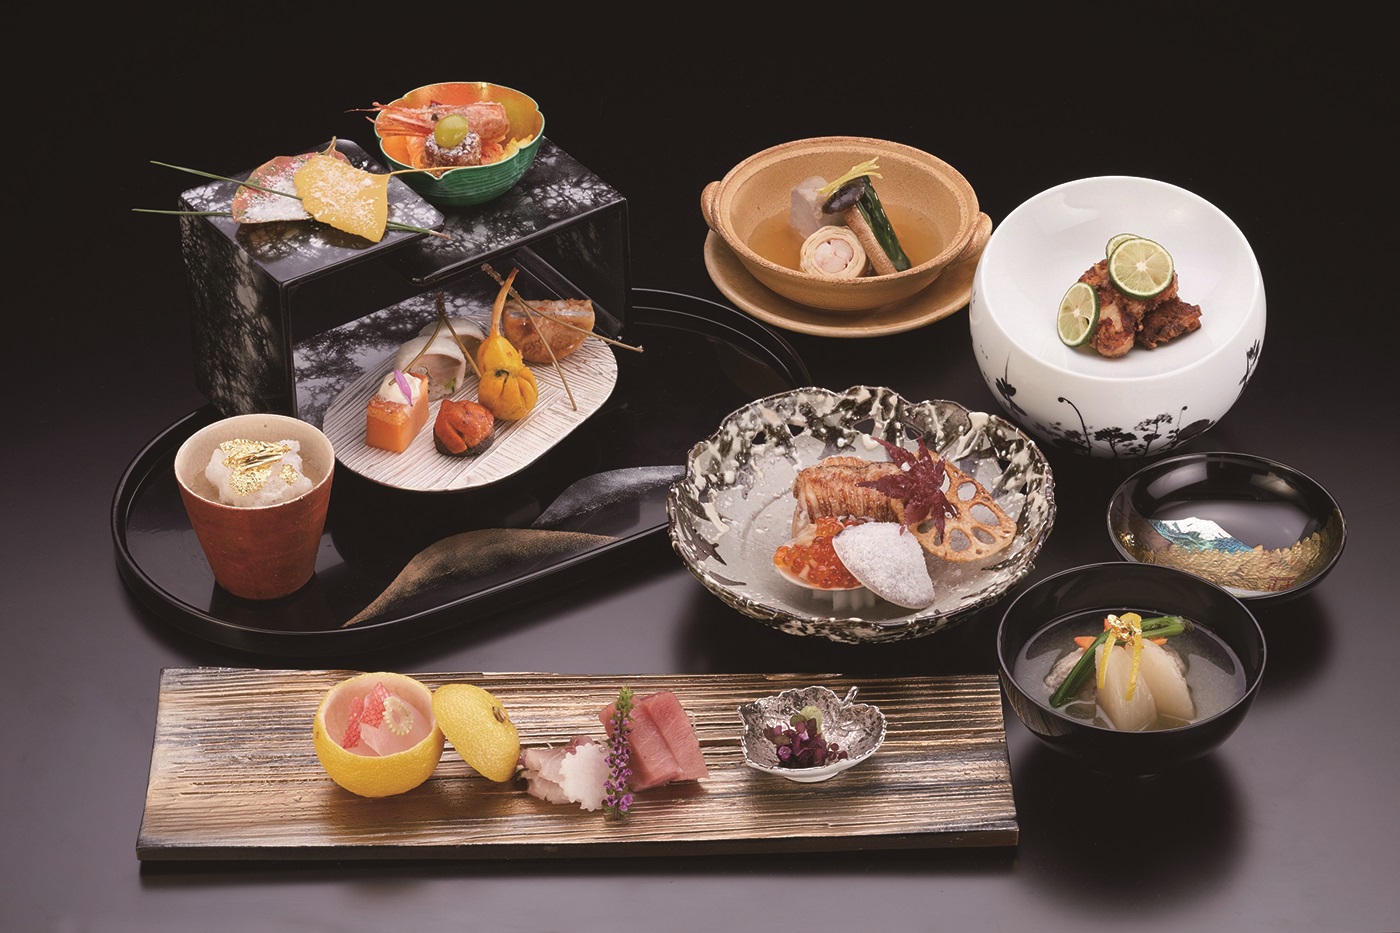 伝統的な懐石料理が自慢のクラシカルなリゾートホテル♪ 神奈川県 箱根・湯河原への旅！おでかけプラン 夕食「懐石料理」 ツイン